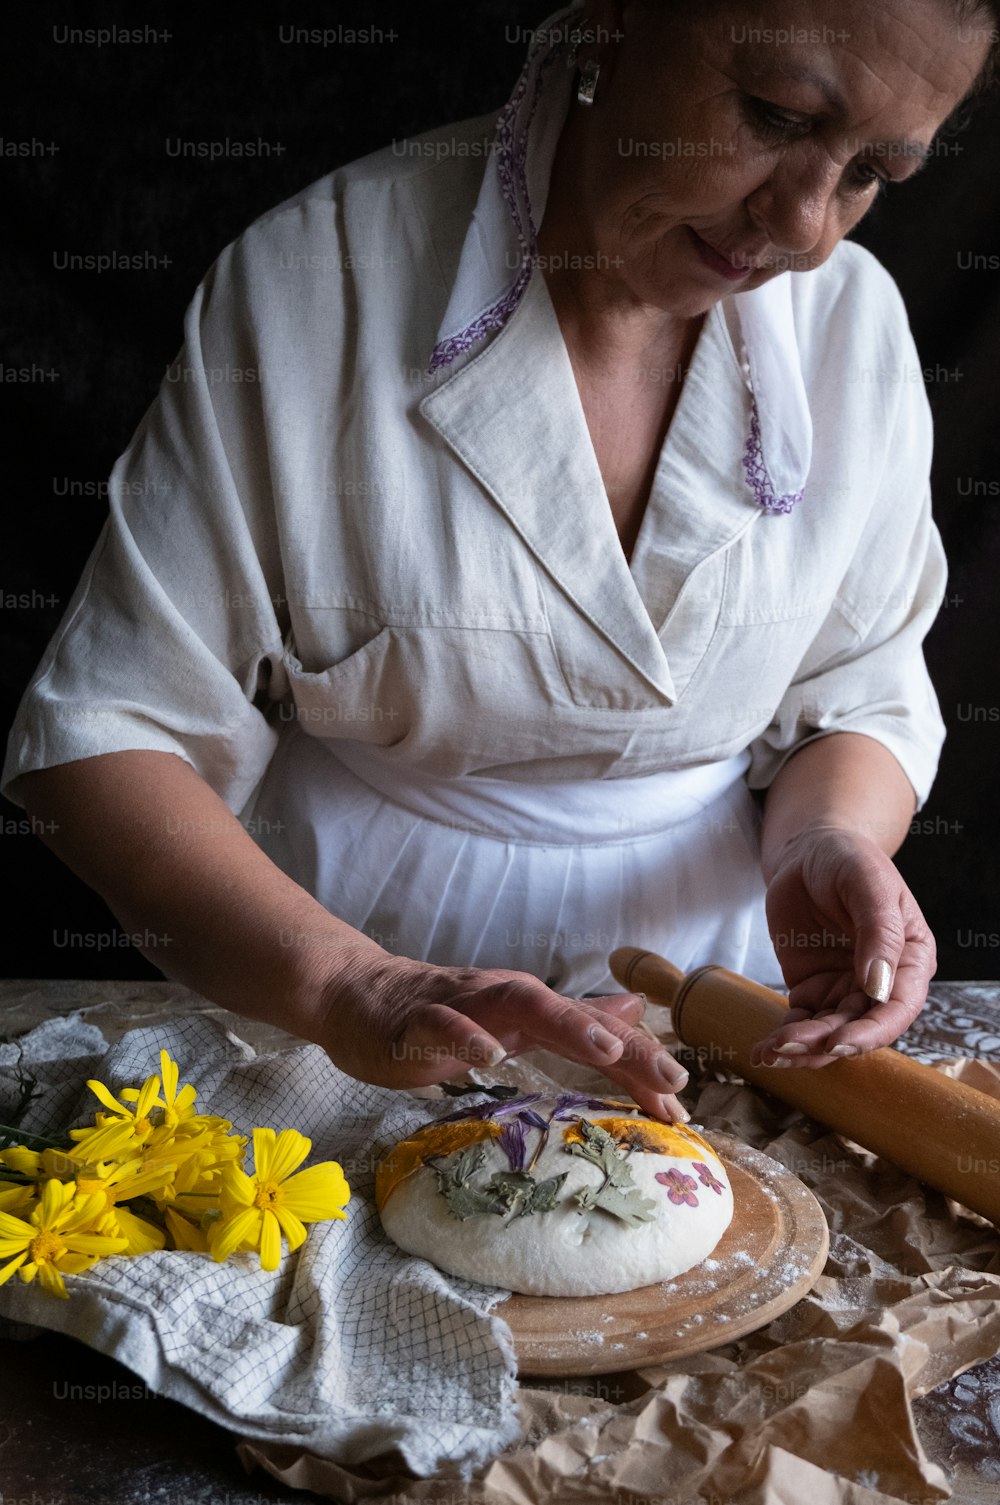 Una mujer con una camisa blanca está haciendo un pastel